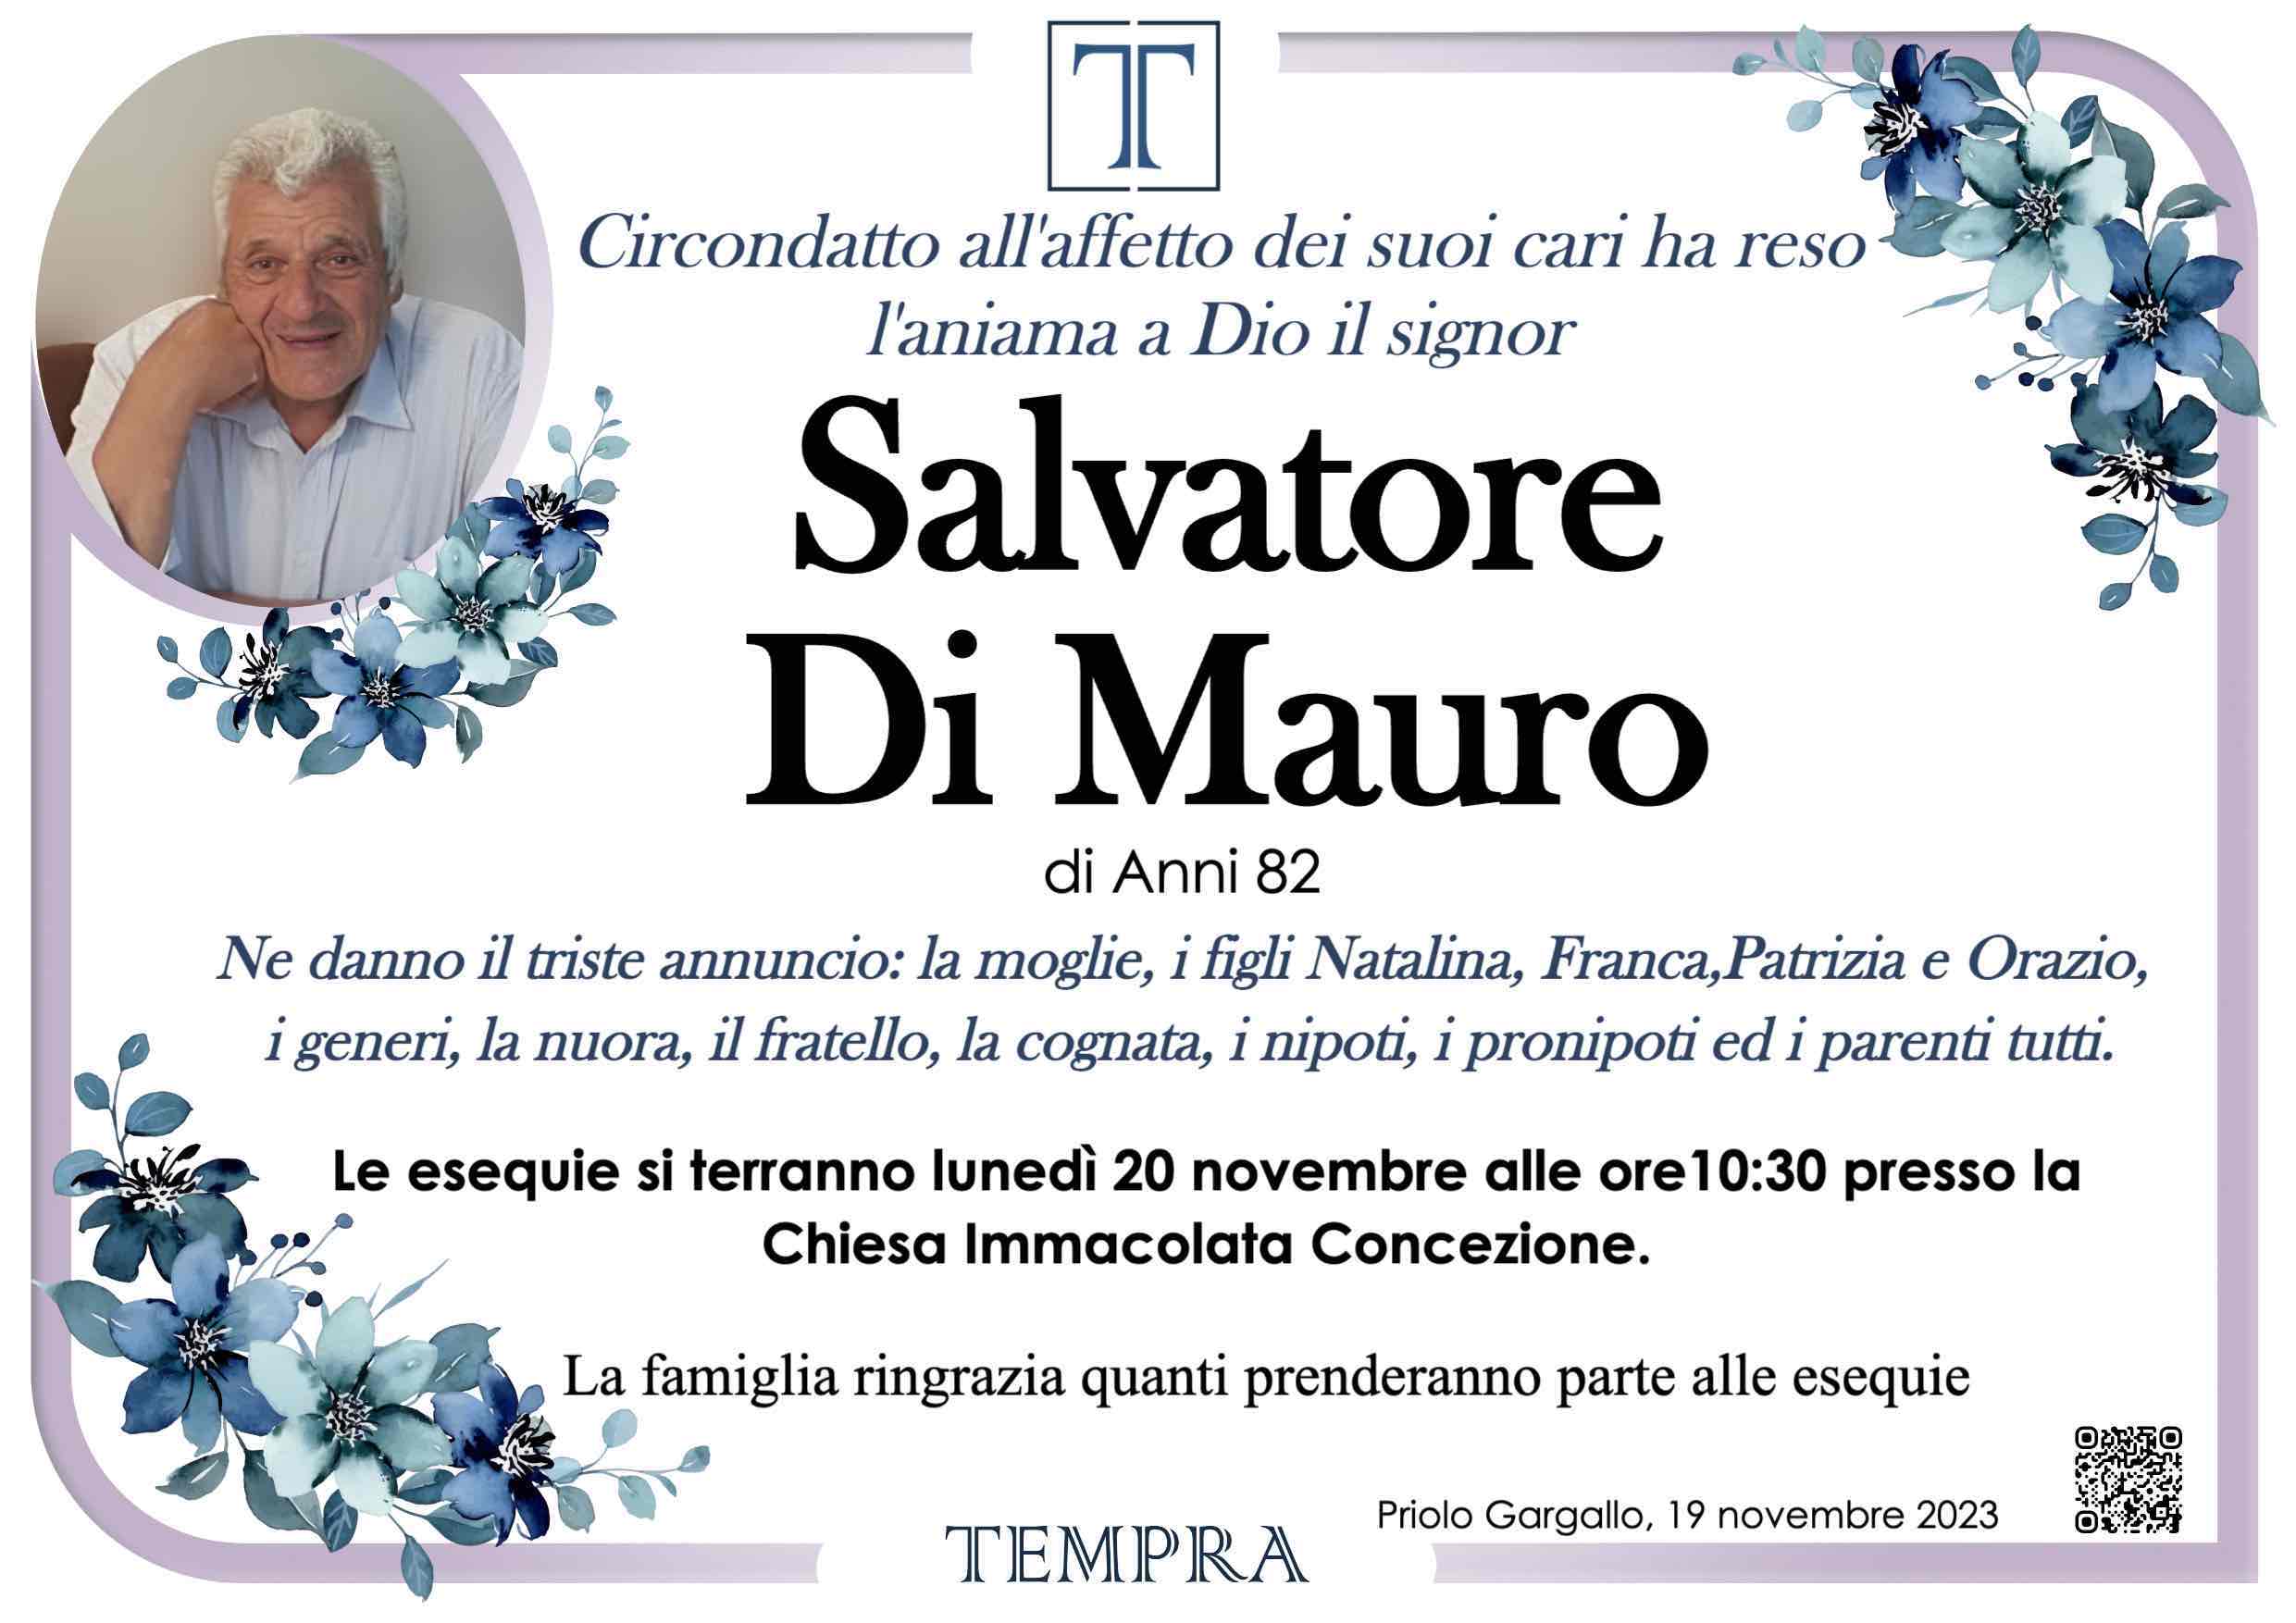 Salvatore Di Mauro